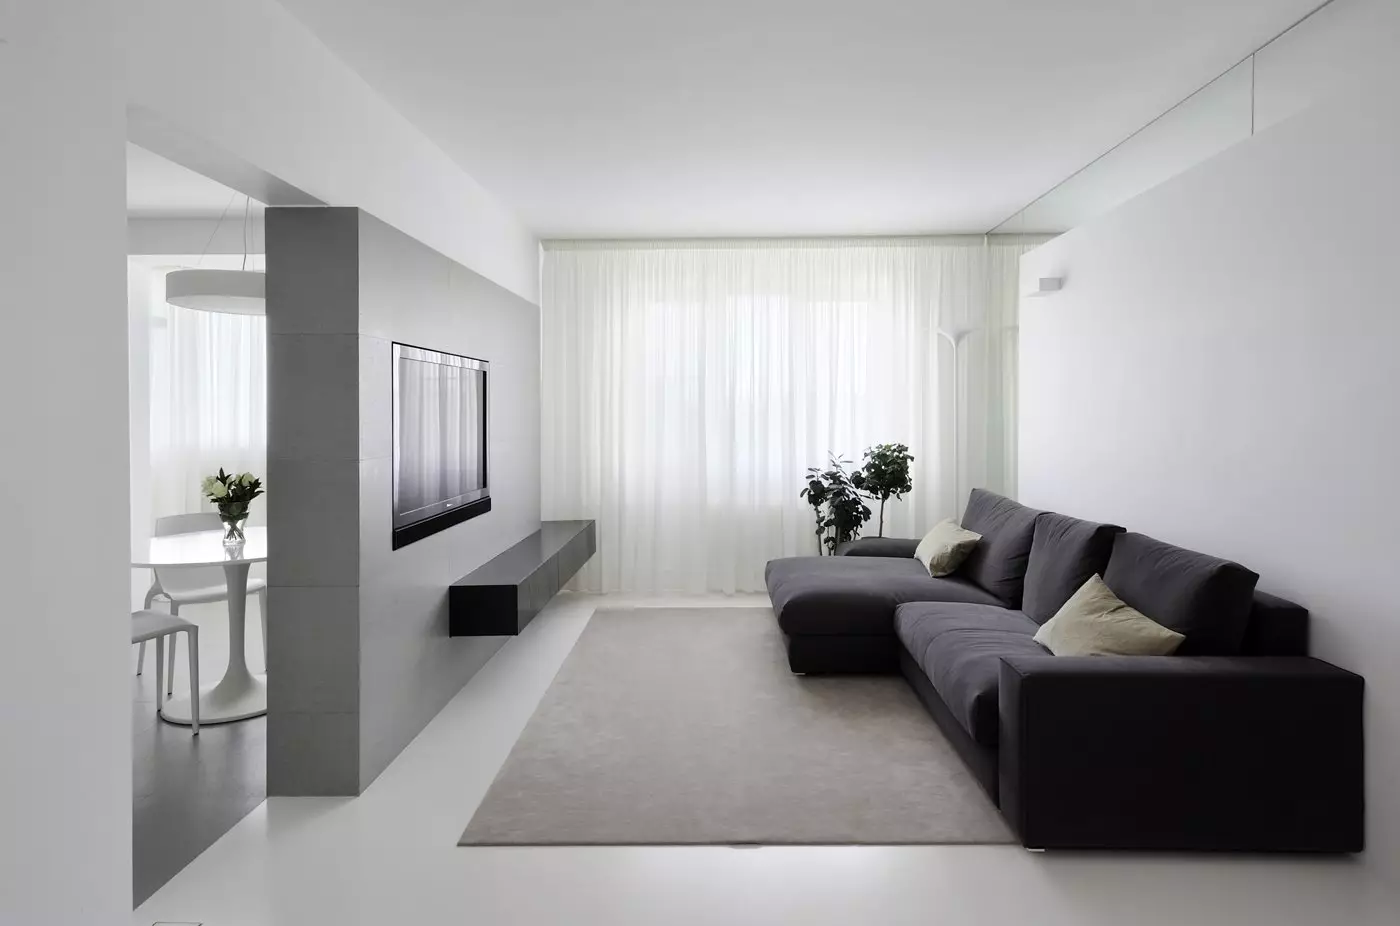 在公寓的设计霍尔（168张照片）：客厅内部内部的细微差别。如何在普通公寓中制作一个大厅美丽又轻松？ 9682_117